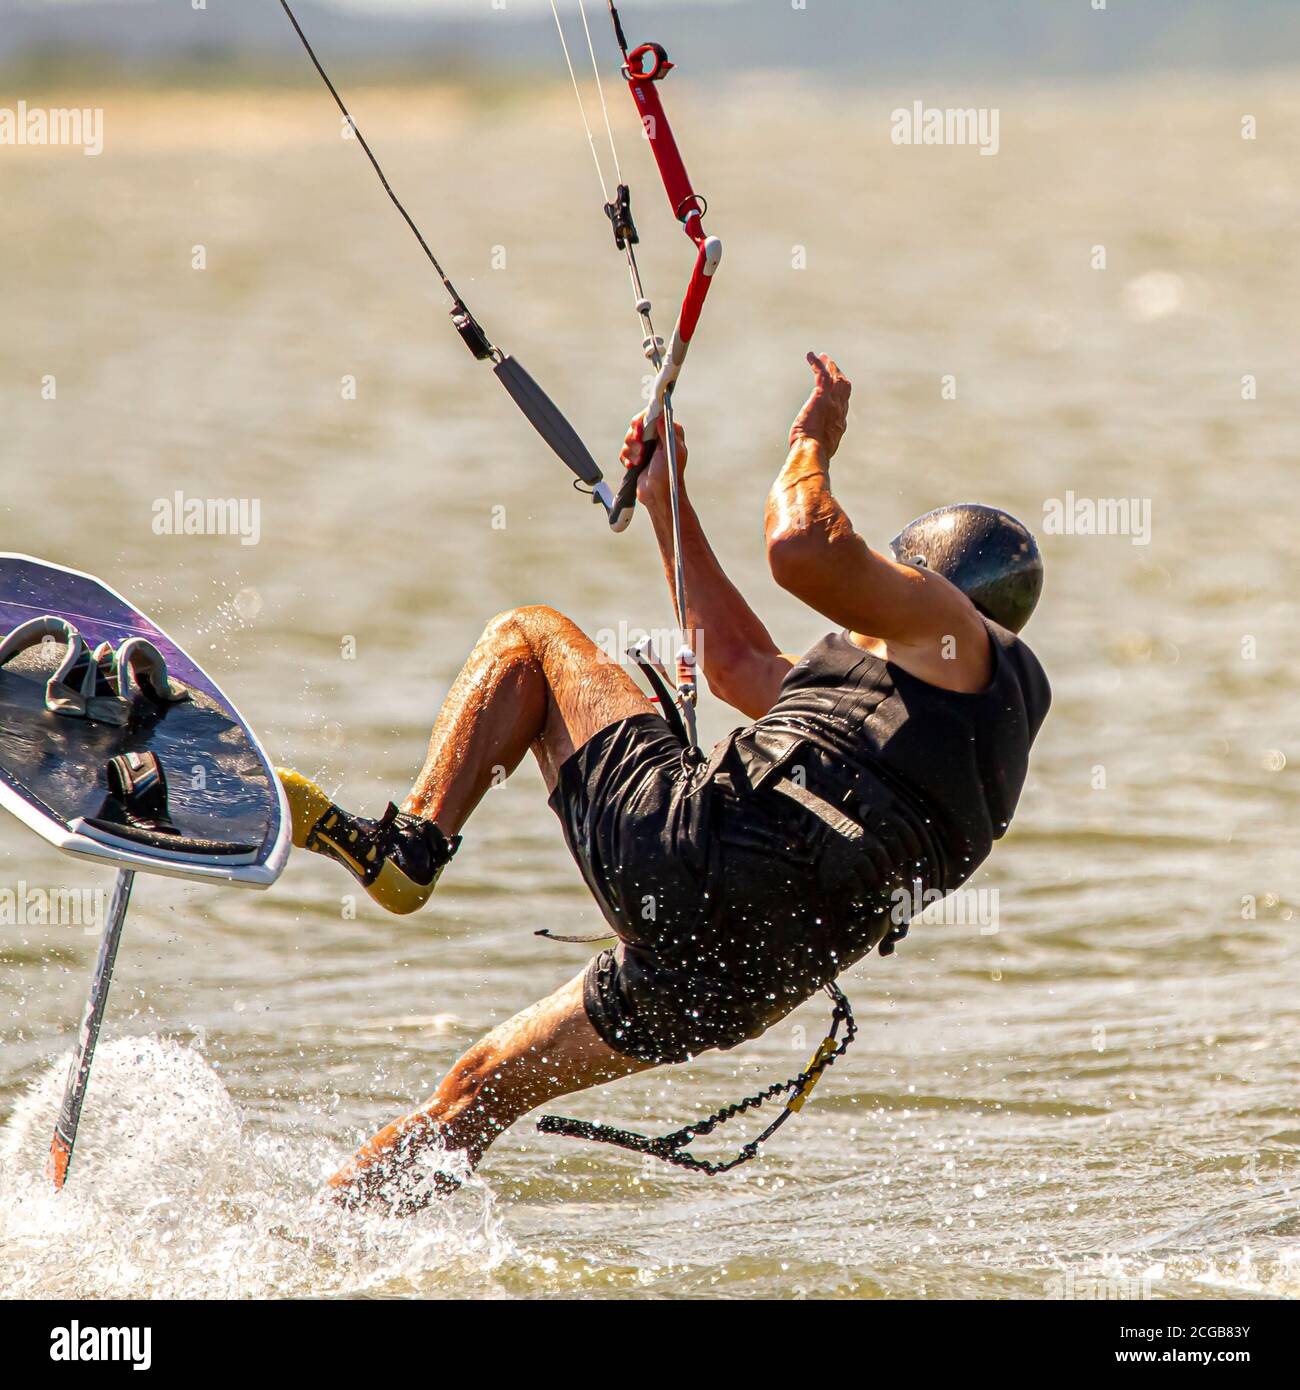 Un kitesurfer che indossa le attrezzature di protezione sta perdendo l'equilibrio e sta cadendo dalla tavola nel mare al largo della costa dell'isola di Assateague. Una grande spl d'acqua Foto Stock